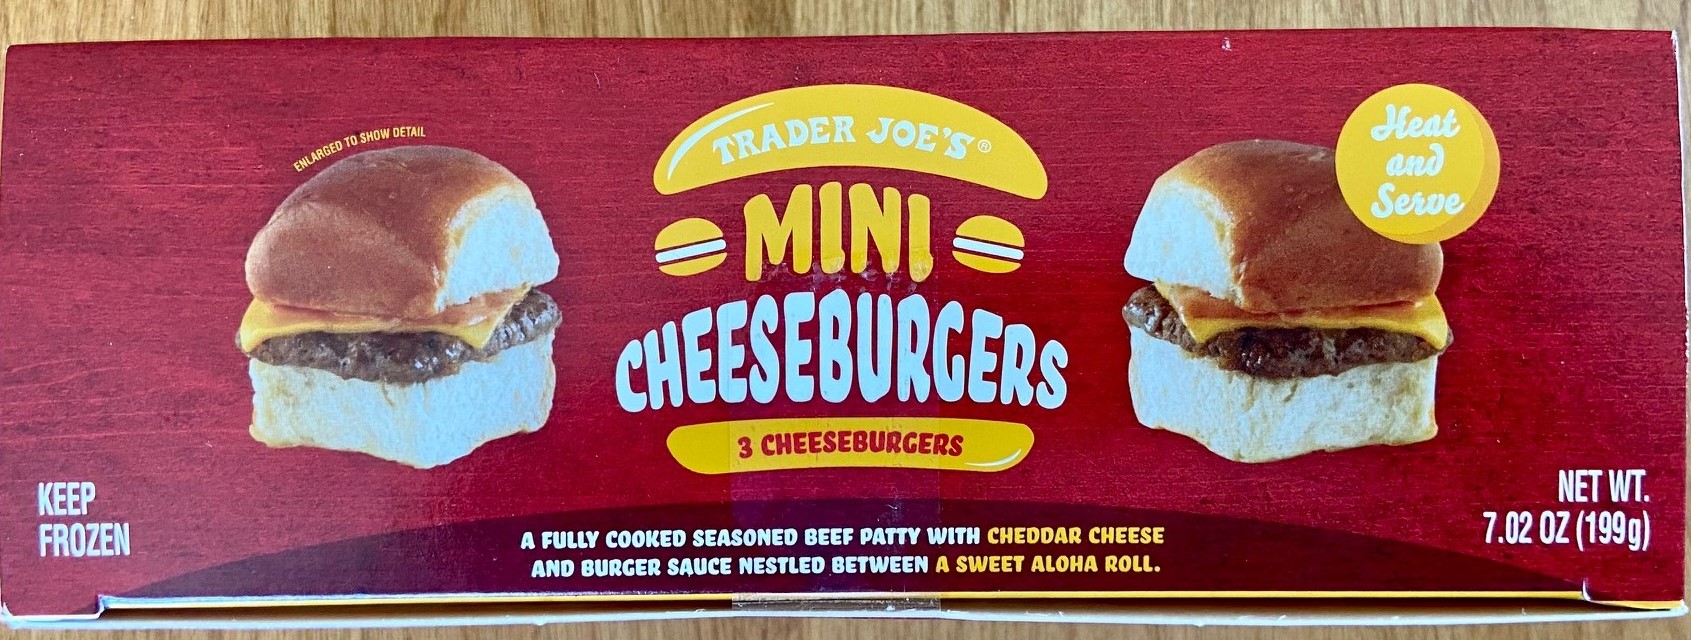 Trader Joe's mini cheeseburger box